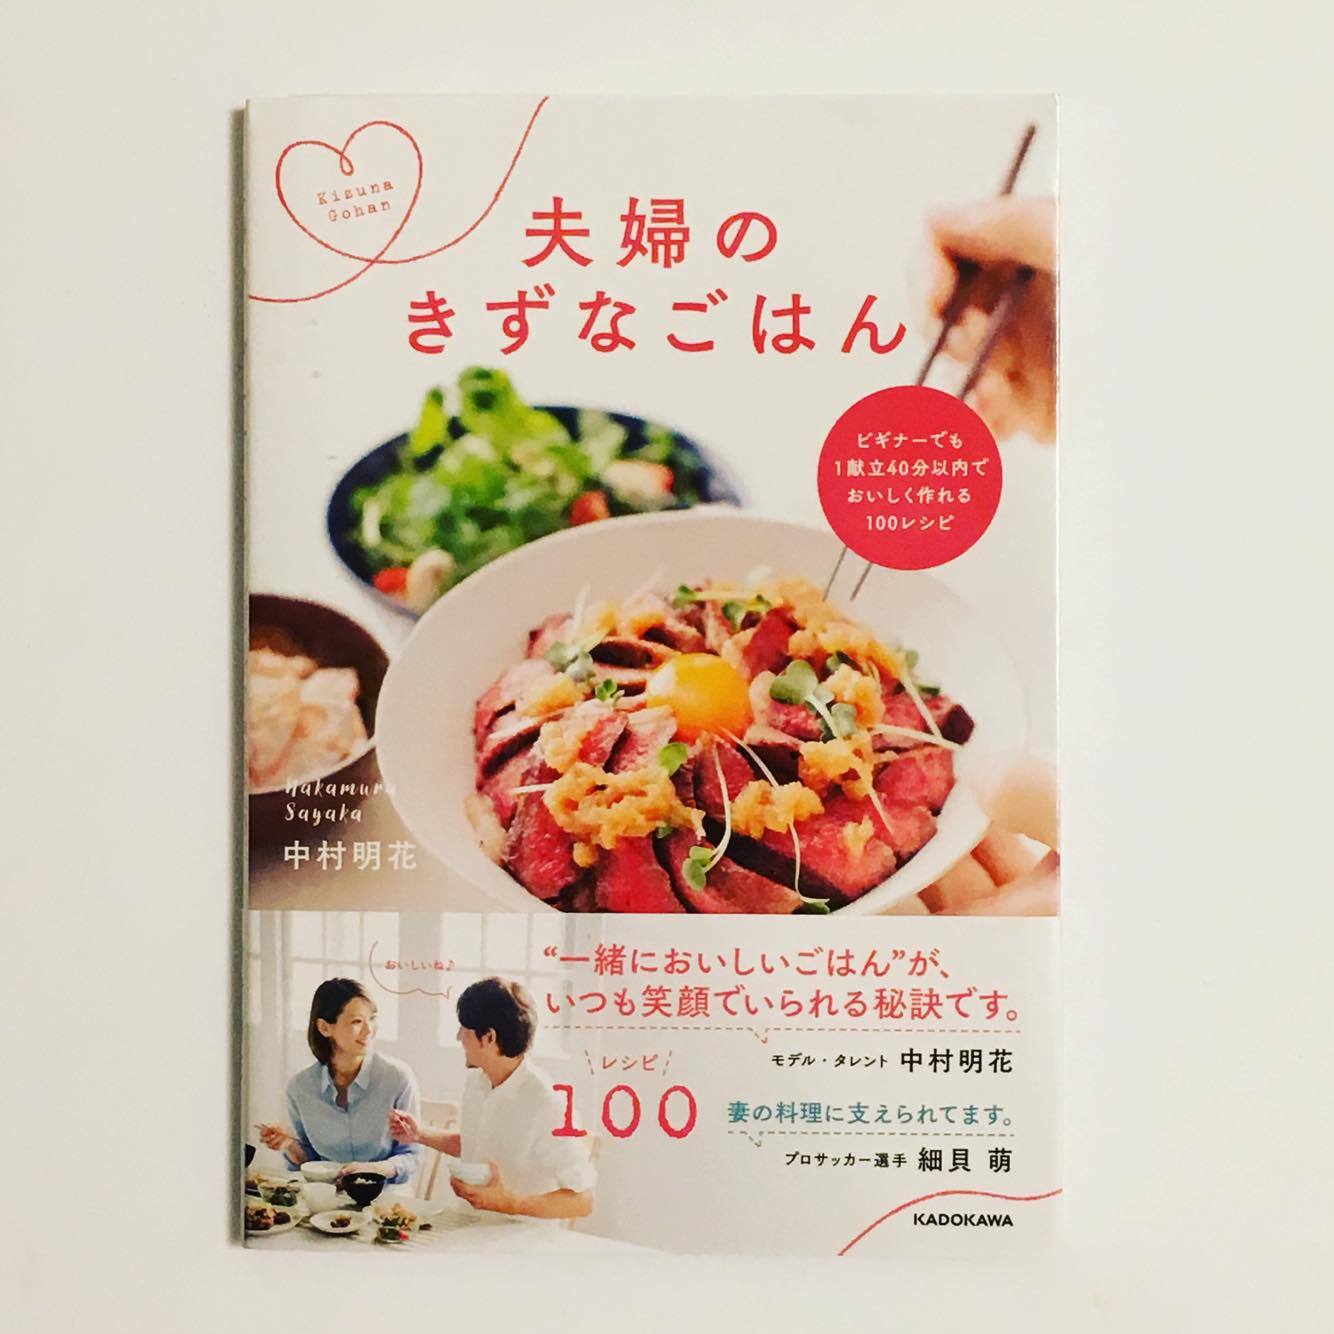 この本です。著者の中村明花さんはブンデスリーガサッカー選手の細貝萌さんの奥様で、しっかり食で旦那様をサポートしています。